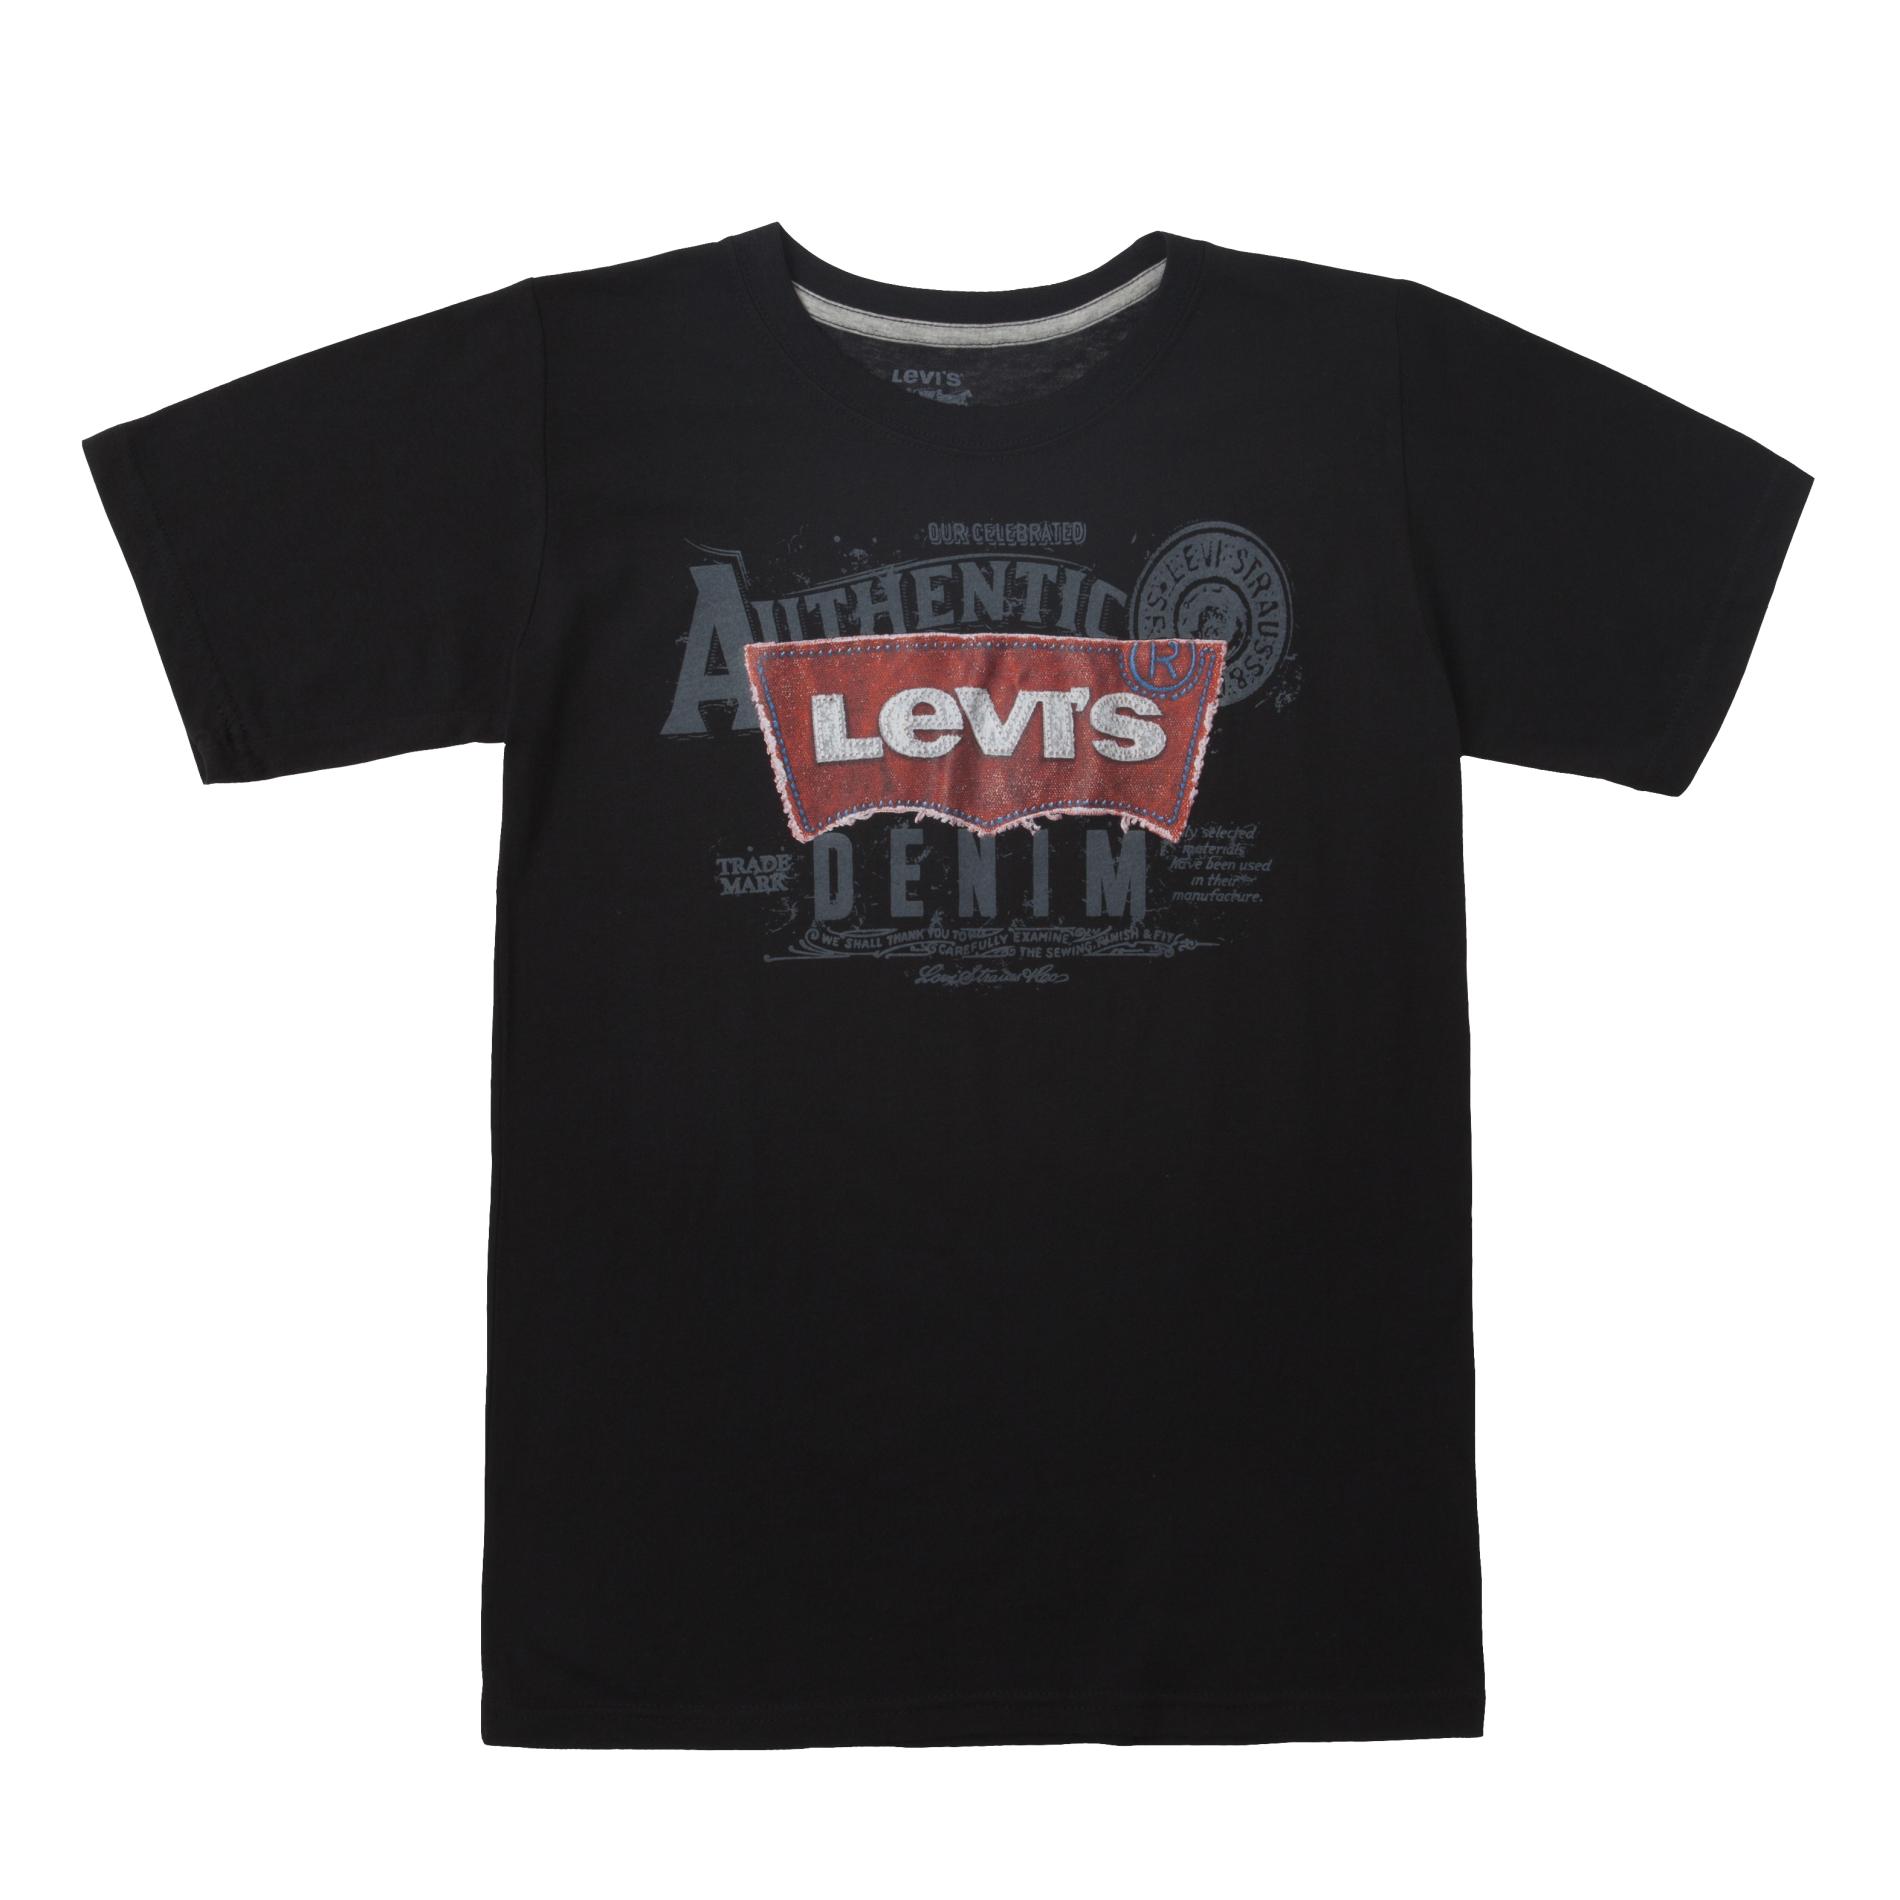 Levi's Boy's Graphic Logo T-Shirt - Authentic Denim